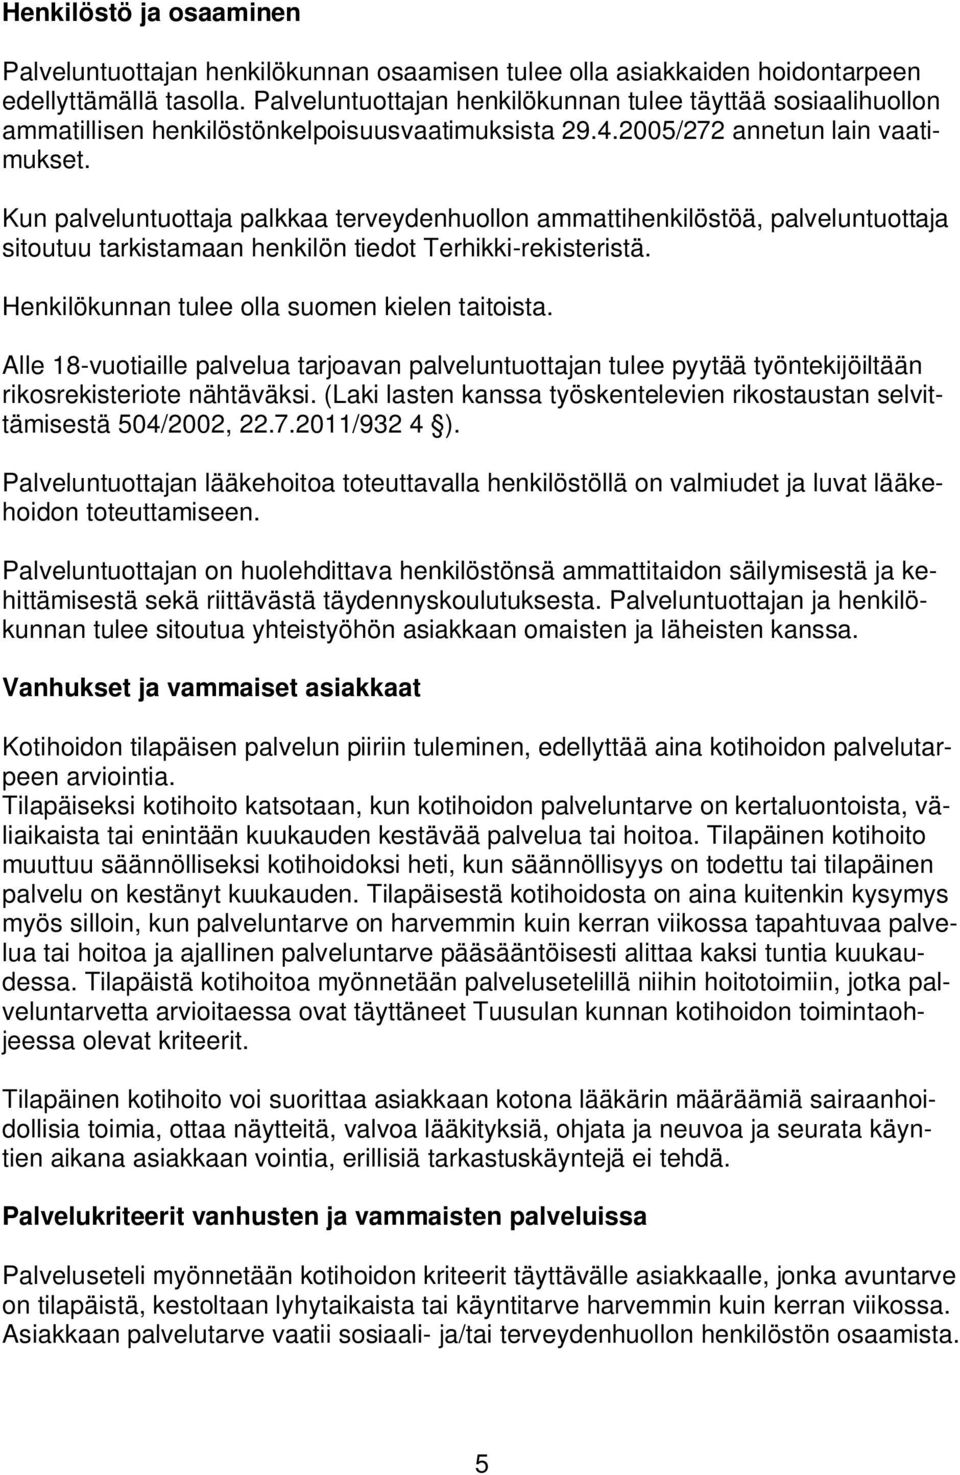 Kun palveluntuottaja palkkaa terveydenhuollon ammattihenkilöstöä, palveluntuottaja sitoutuu tarkistamaan henkilön tiedot Terhikki-rekisteristä. Henkilökunnan tulee olla suomen kielen taitoista.